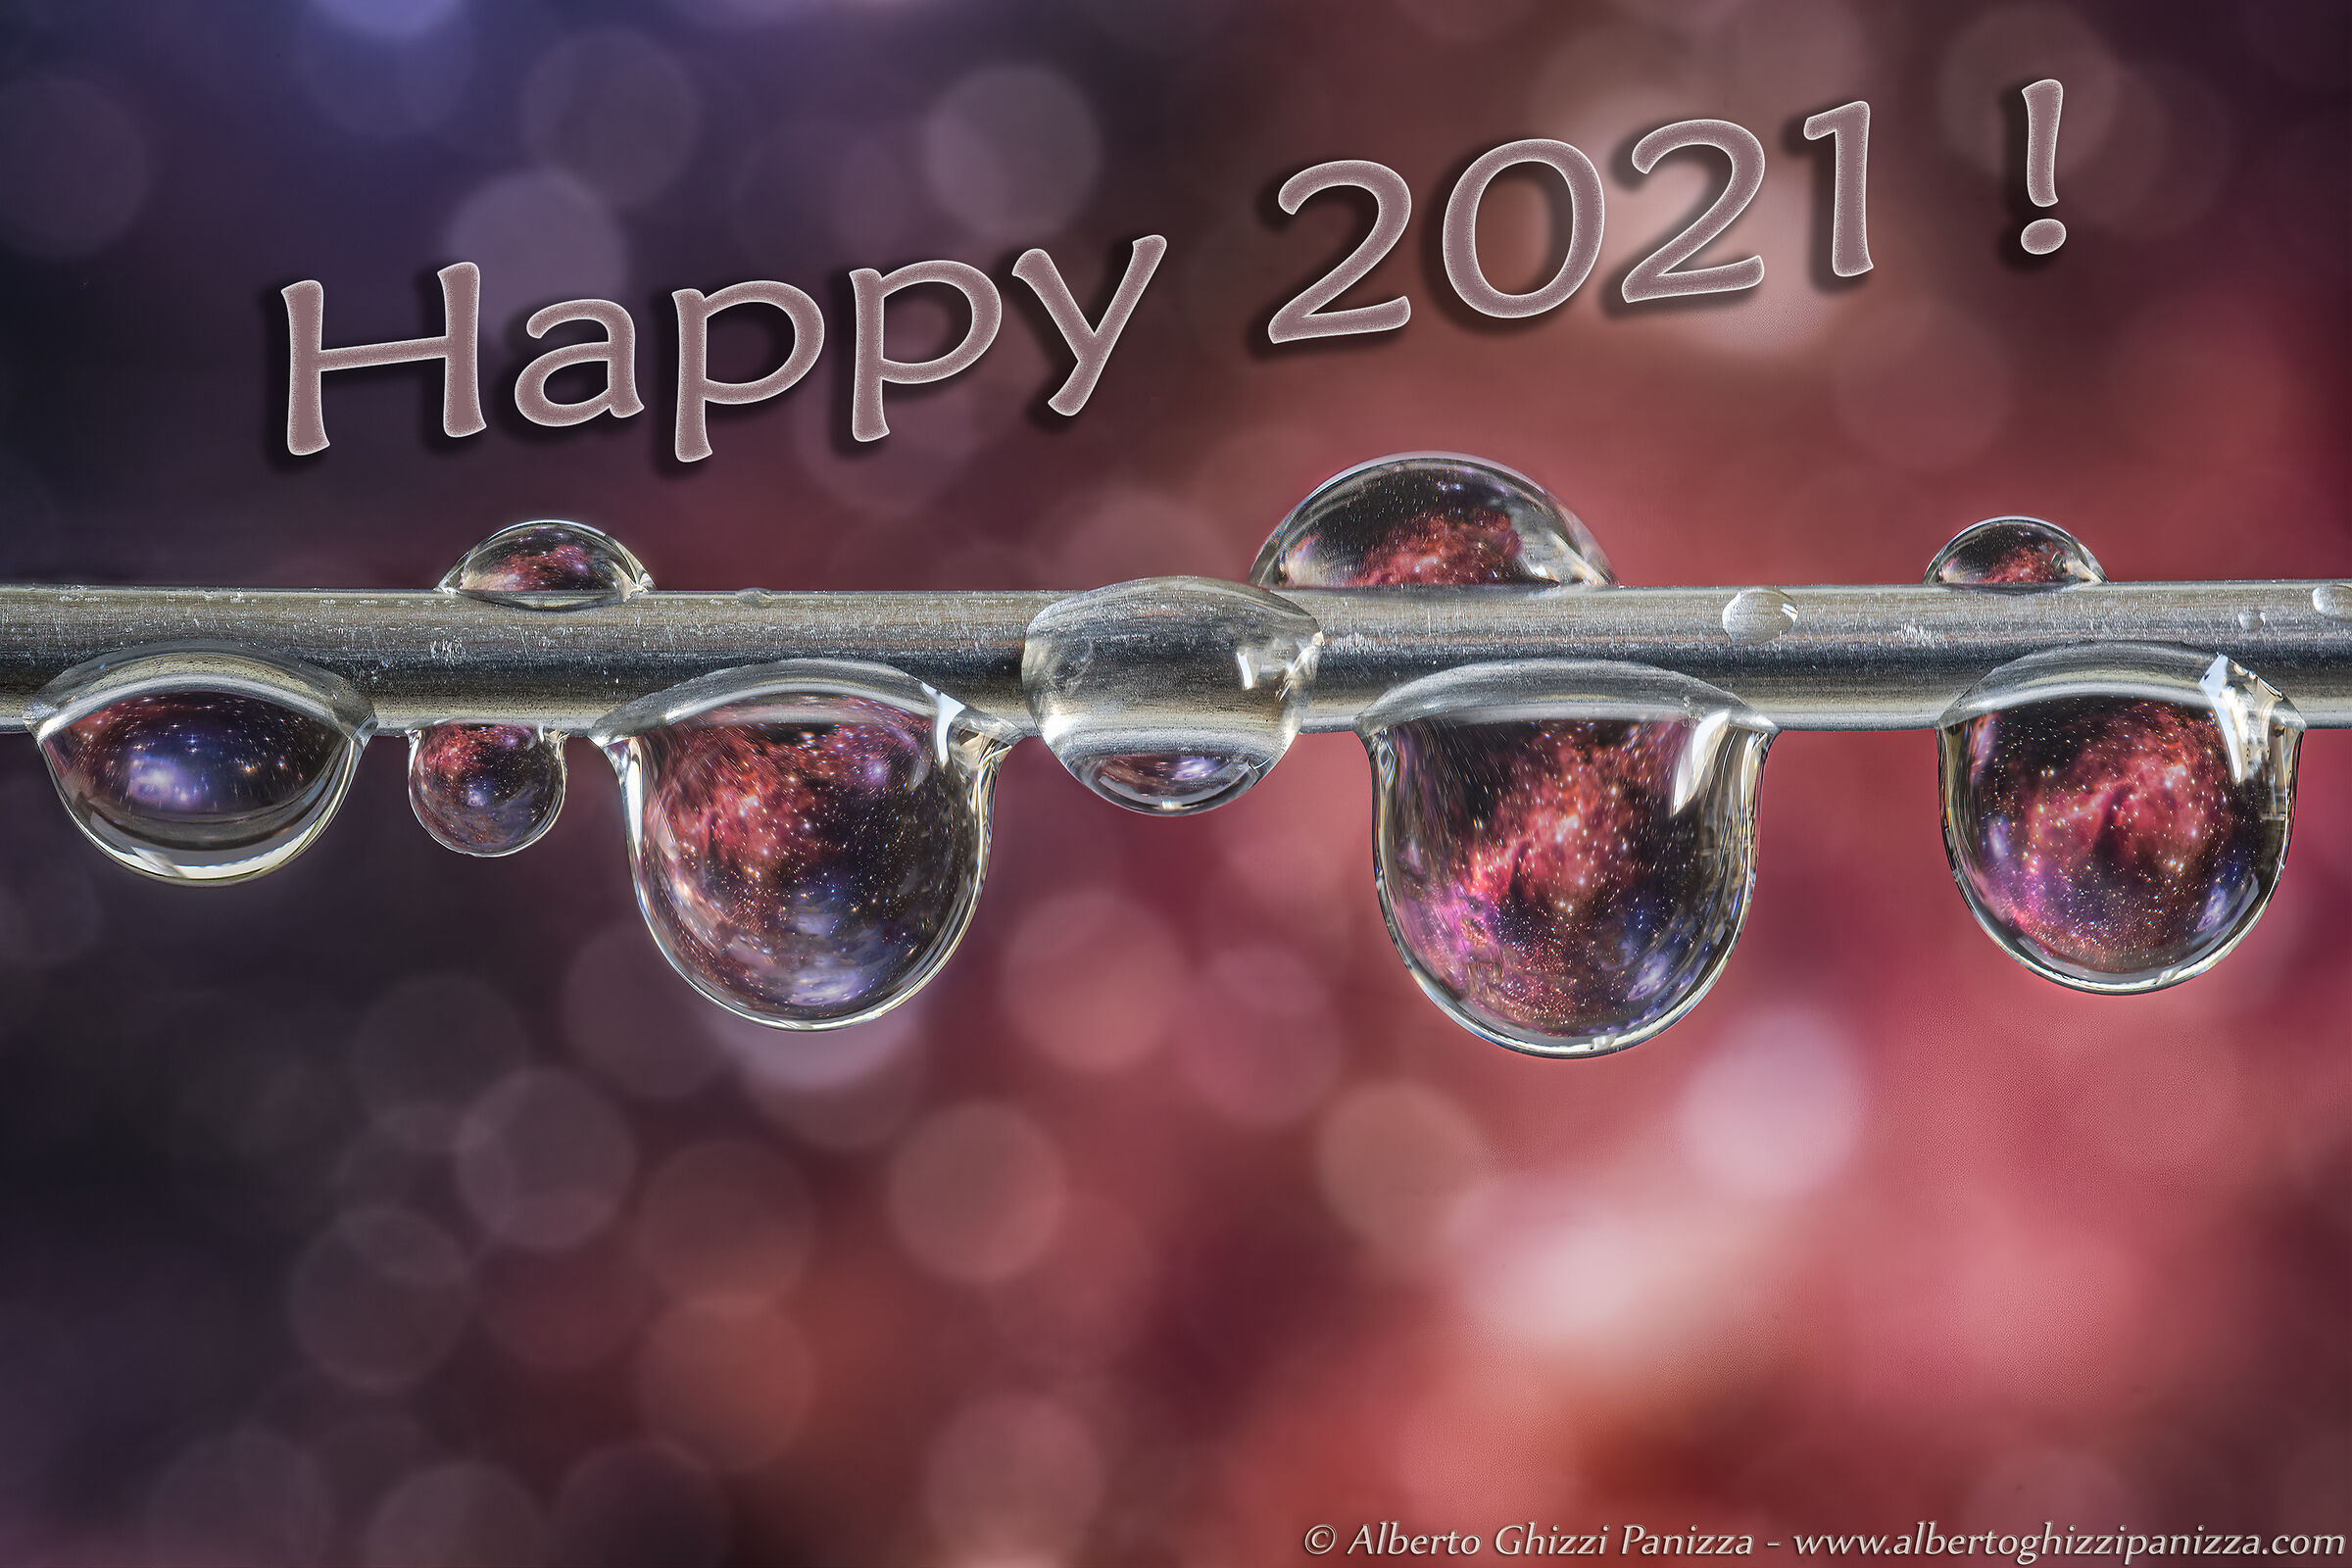 Happy 2021!...